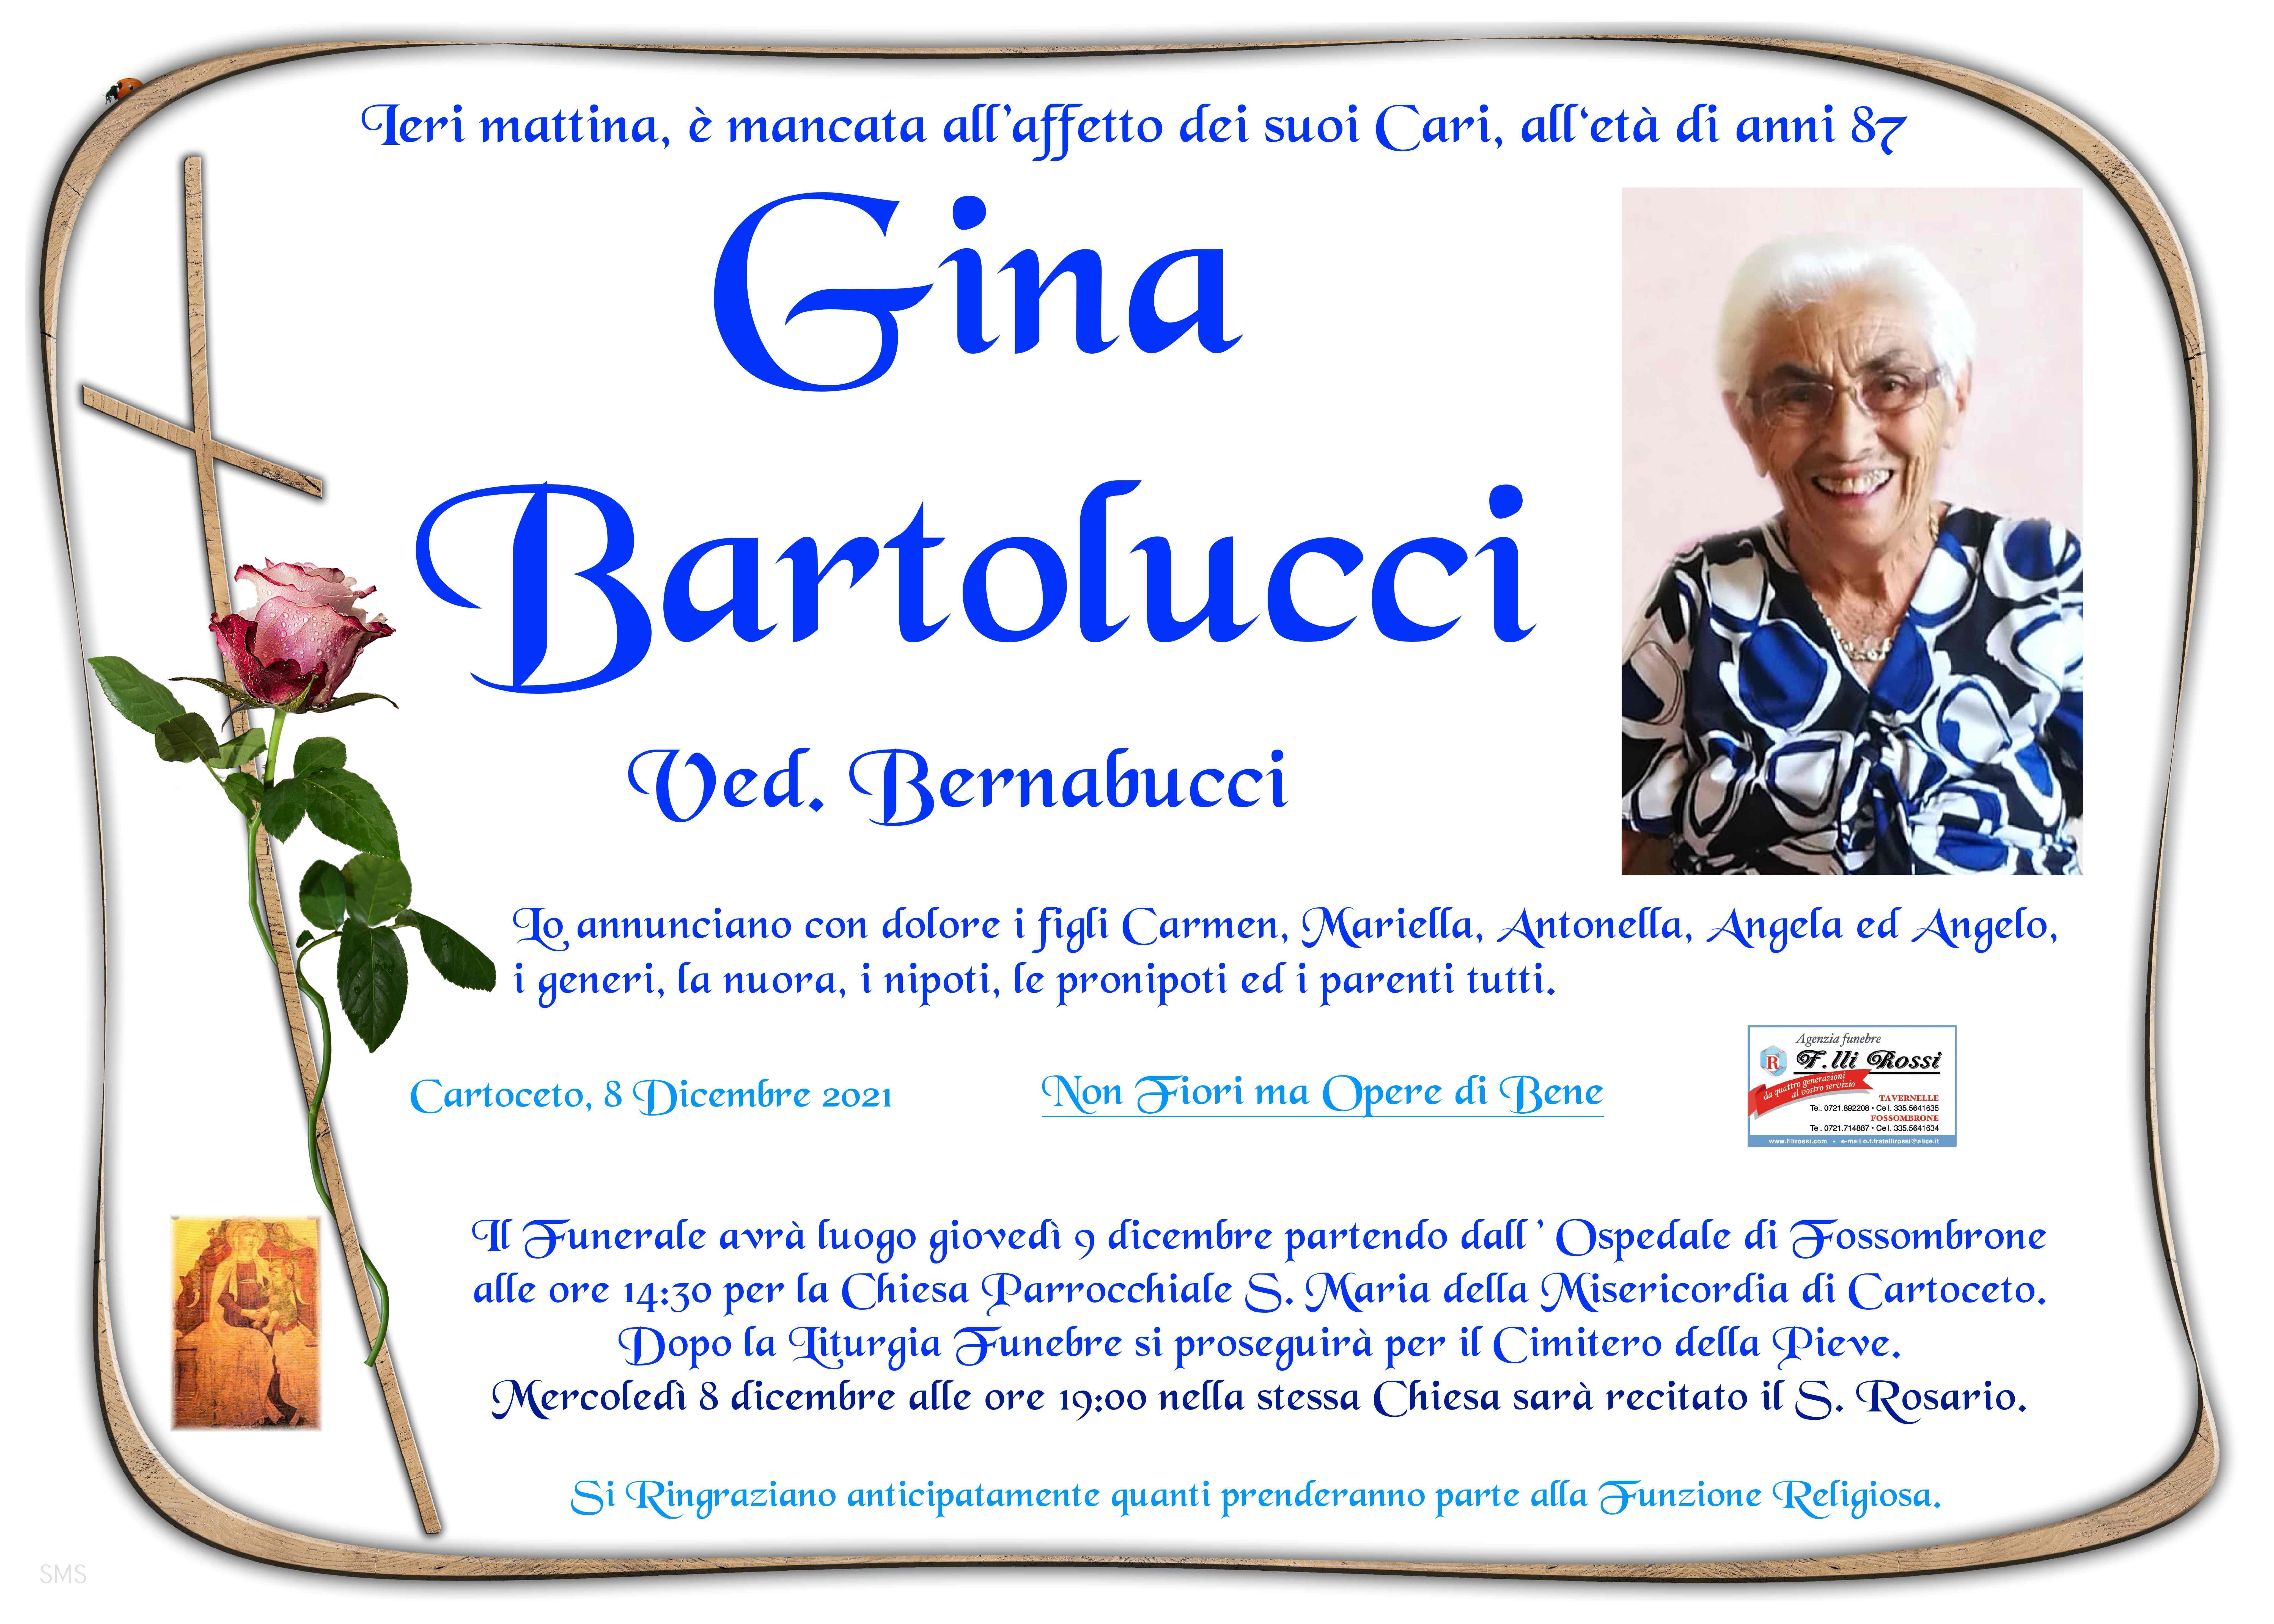 Gina Bartolucci